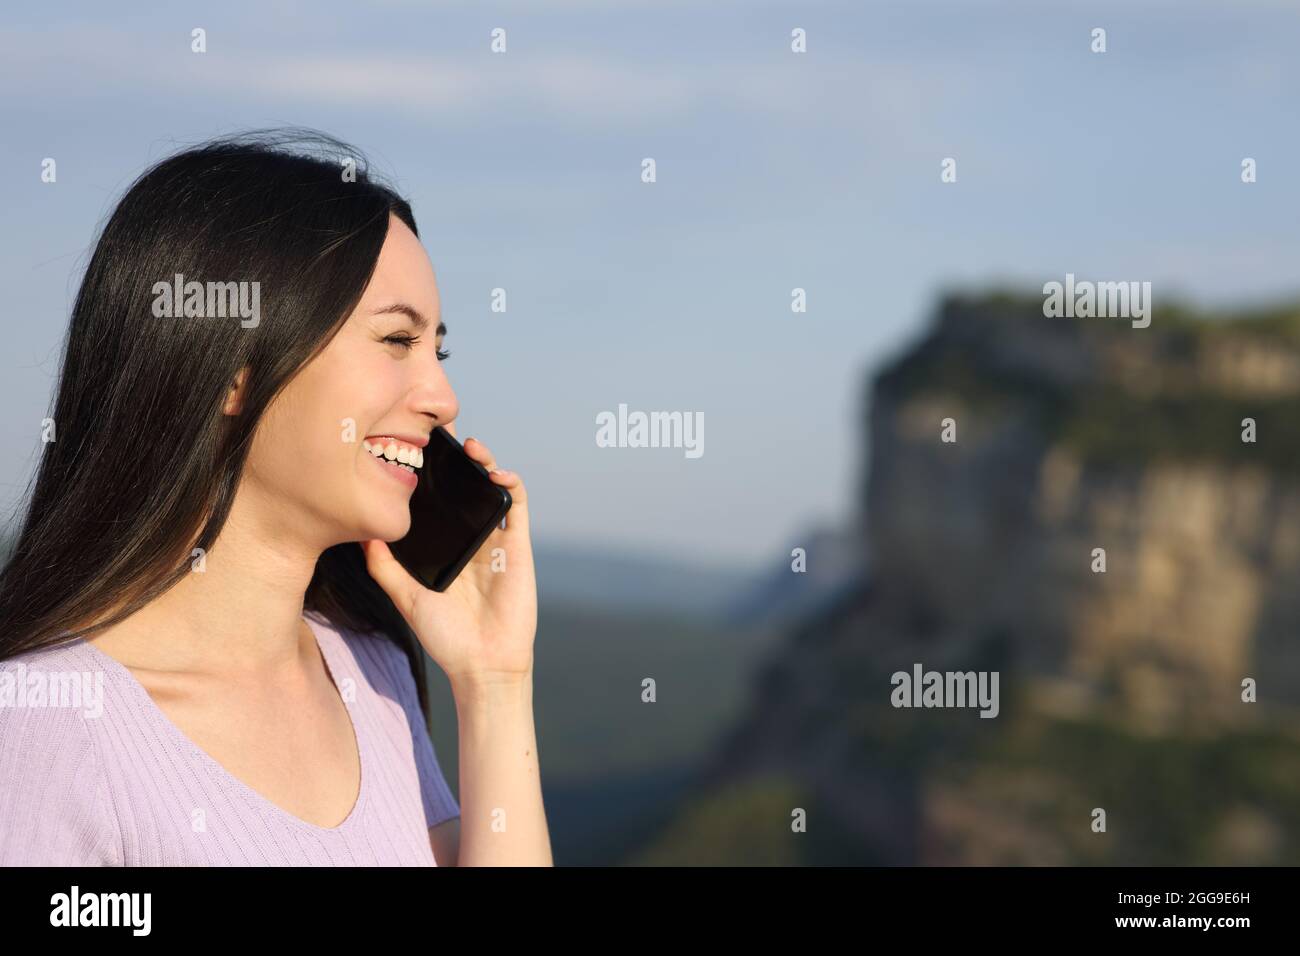 Asiatische Frau im Gespräch auf dem Handy lächelt in den Bergen Stockfoto